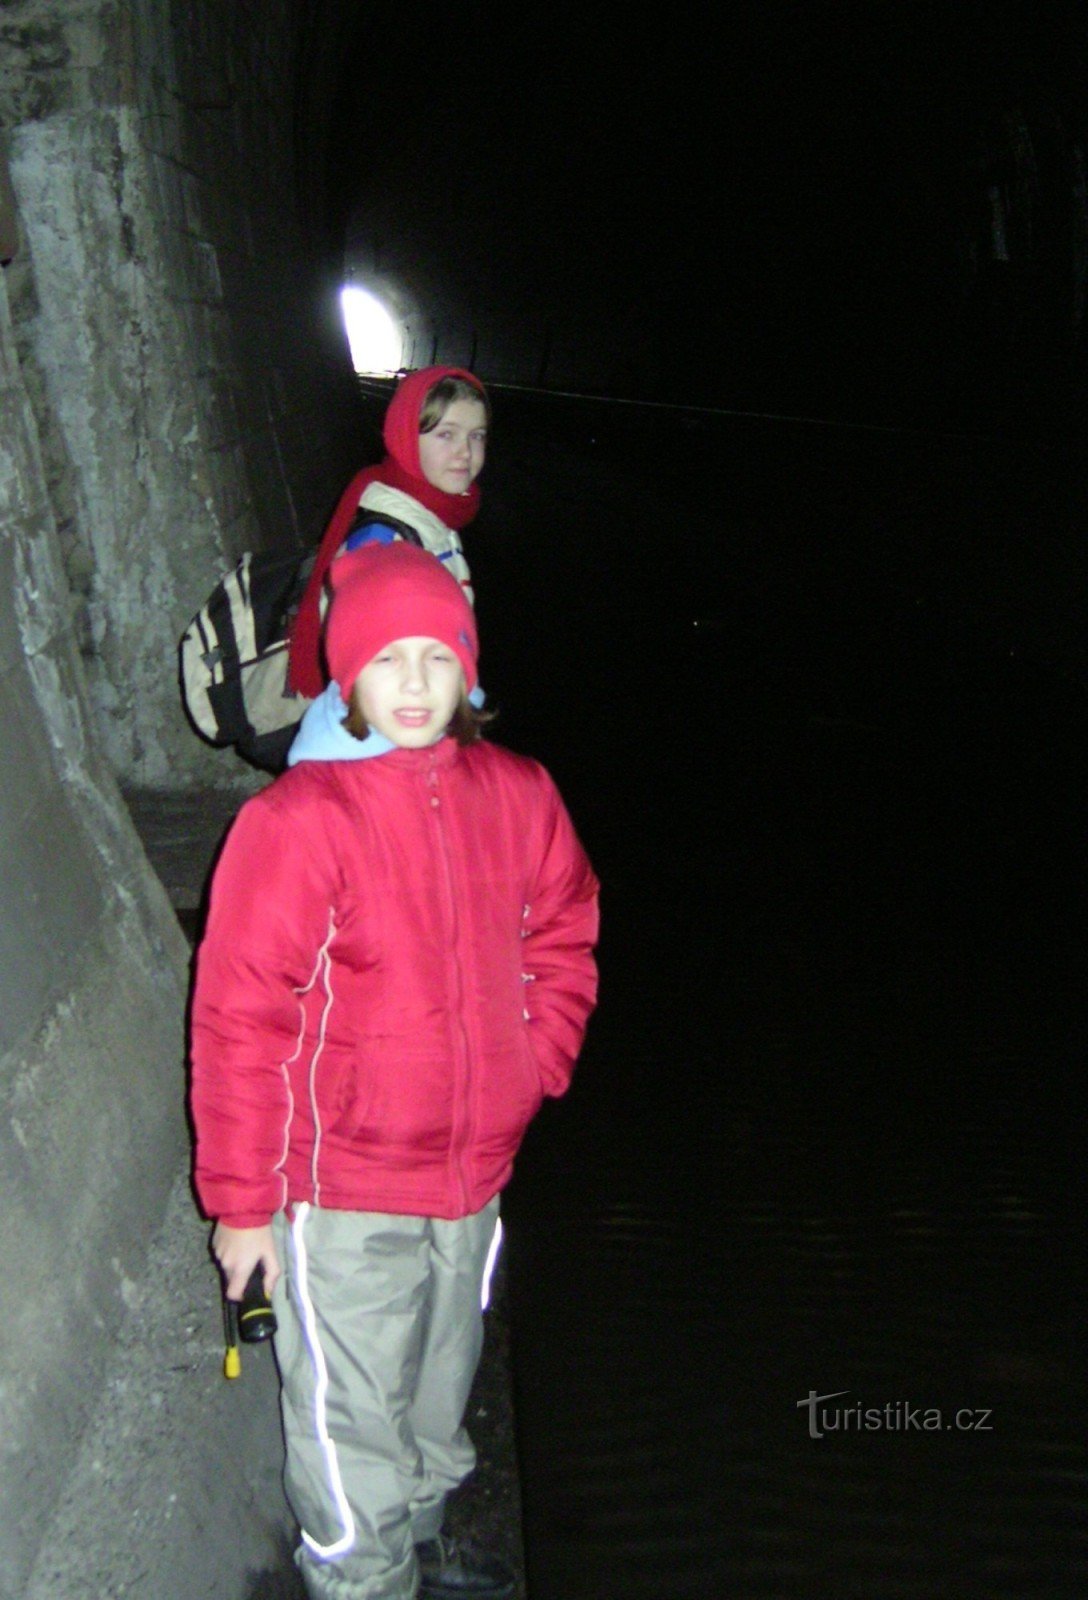 Malá Chuchle - ciemna ścieżka przez tunel kolejowy